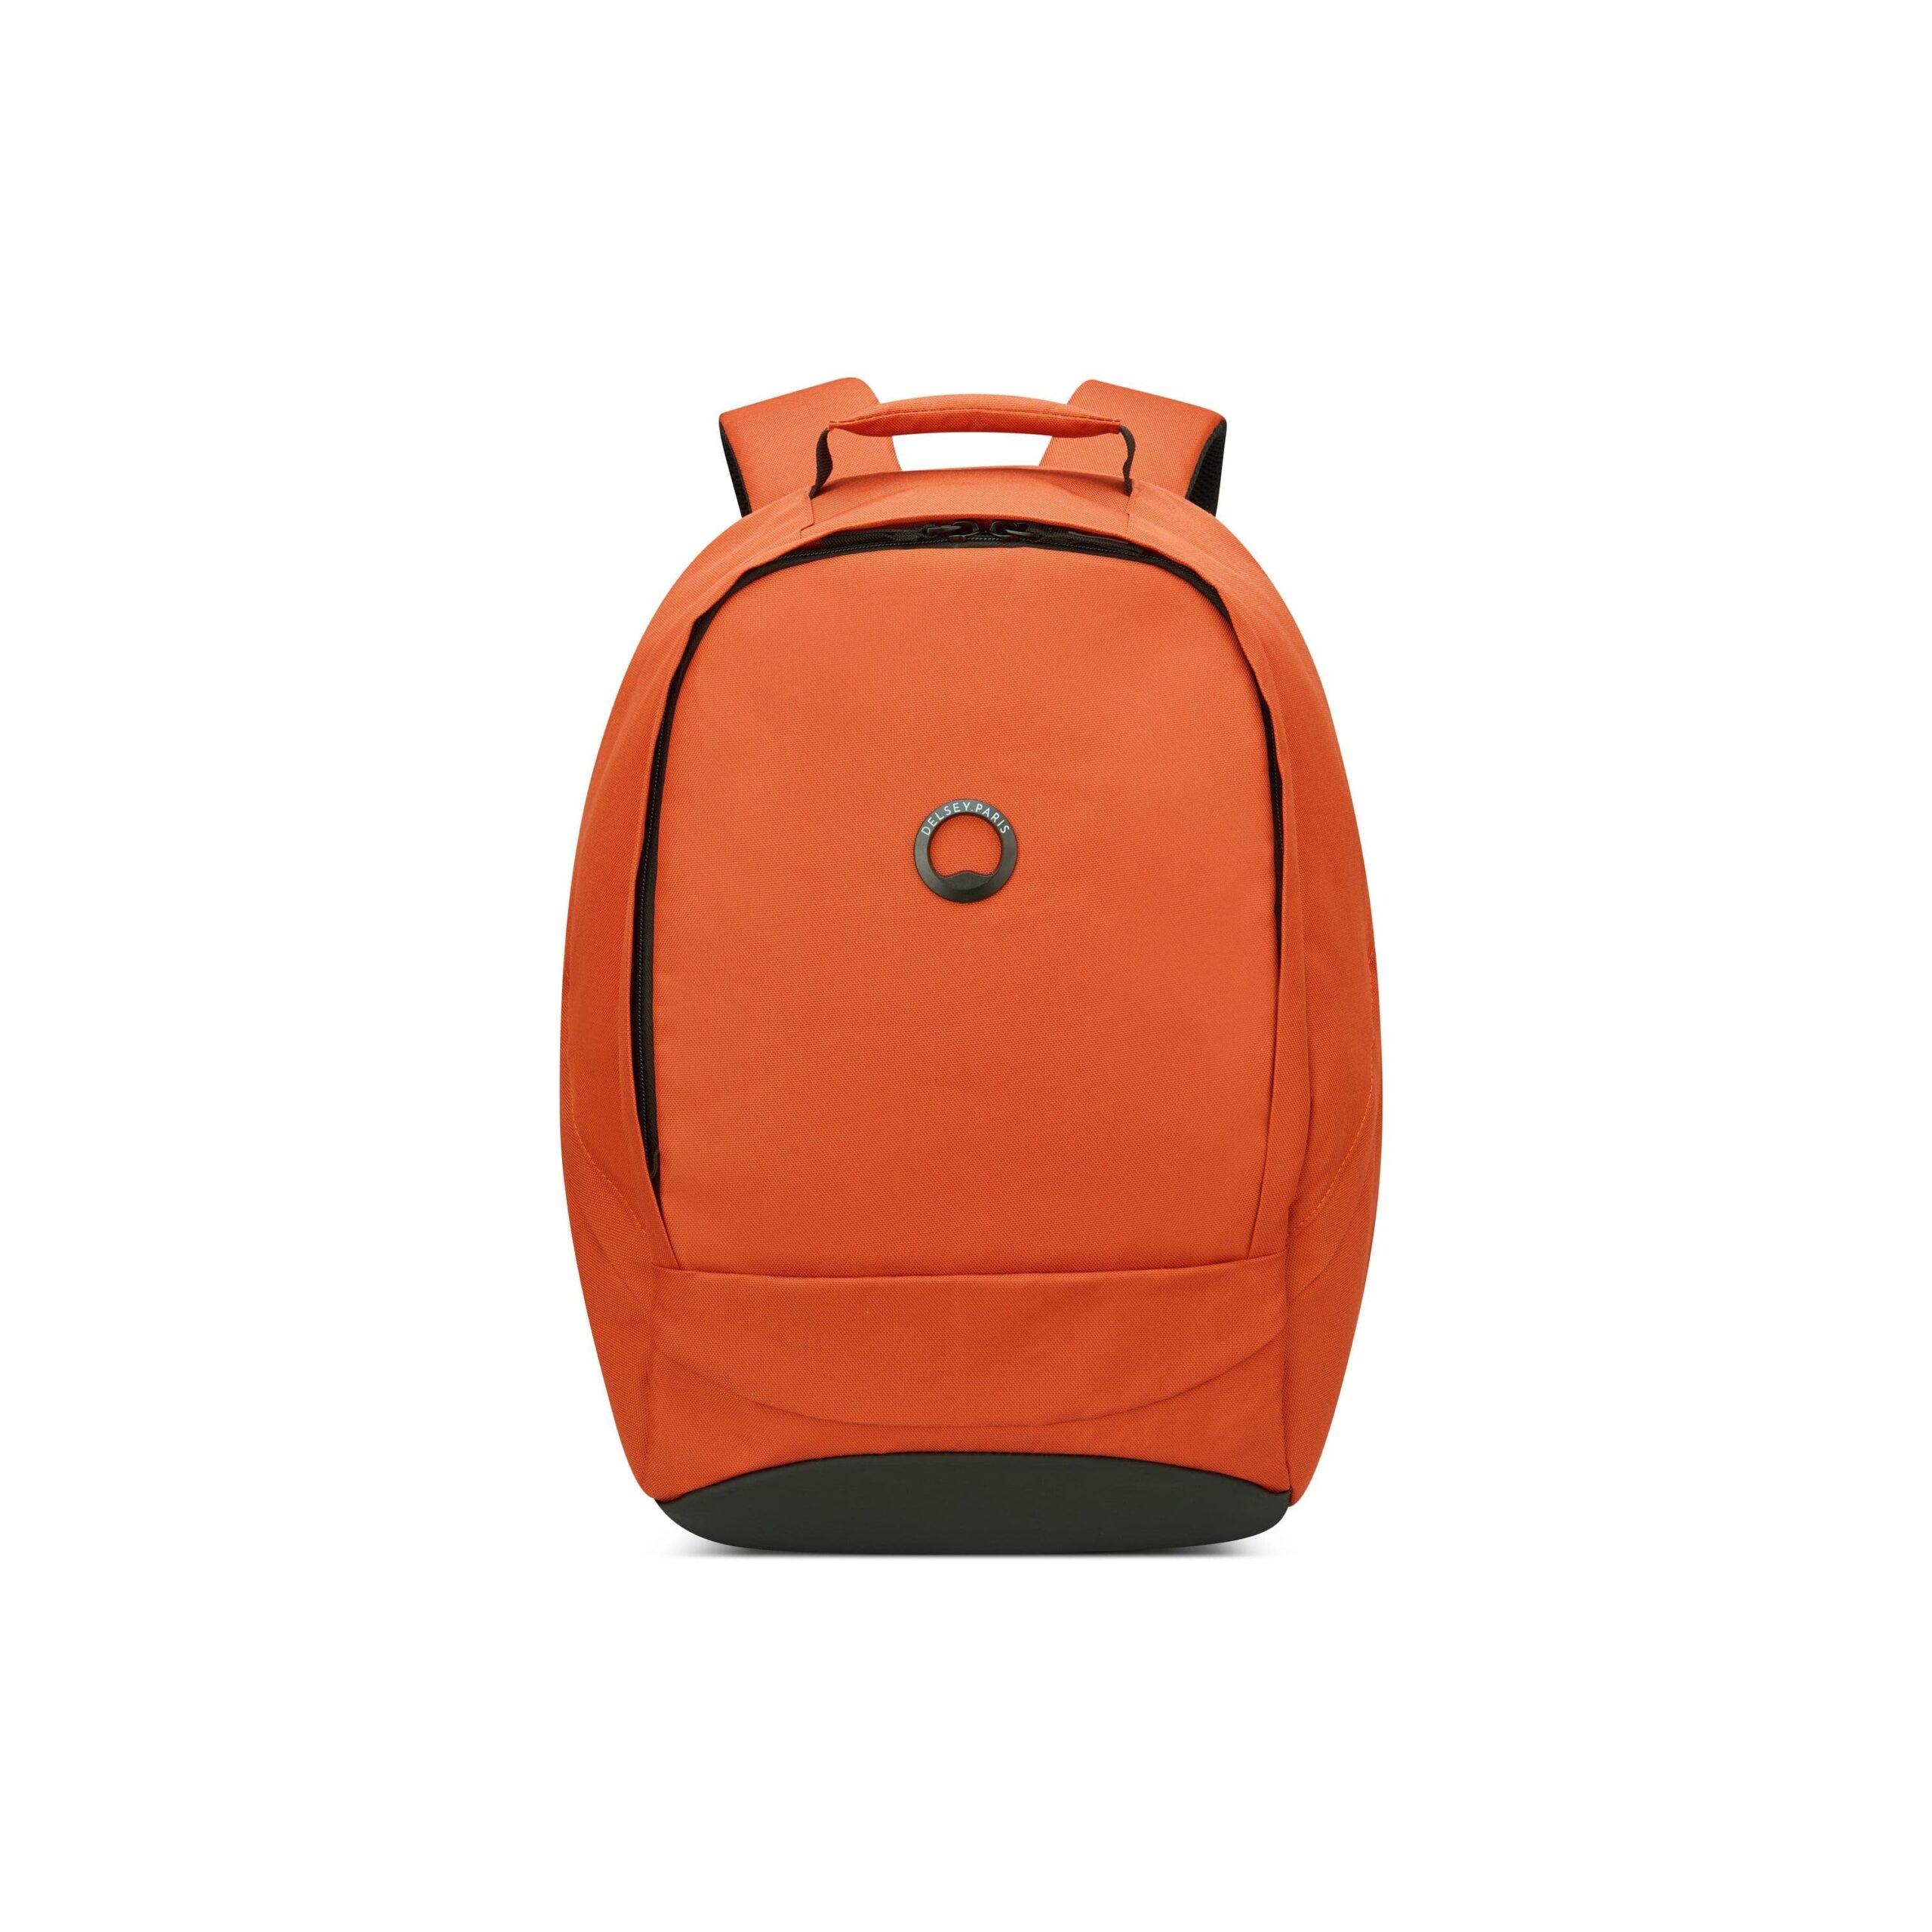 شنط ظهر سيكيور بان للابتوب 13.3 بوصة 22 لتر بوليستر لون برتقالي من ديلسي Delsey Securban 13.3" Laptop Protection Backpack